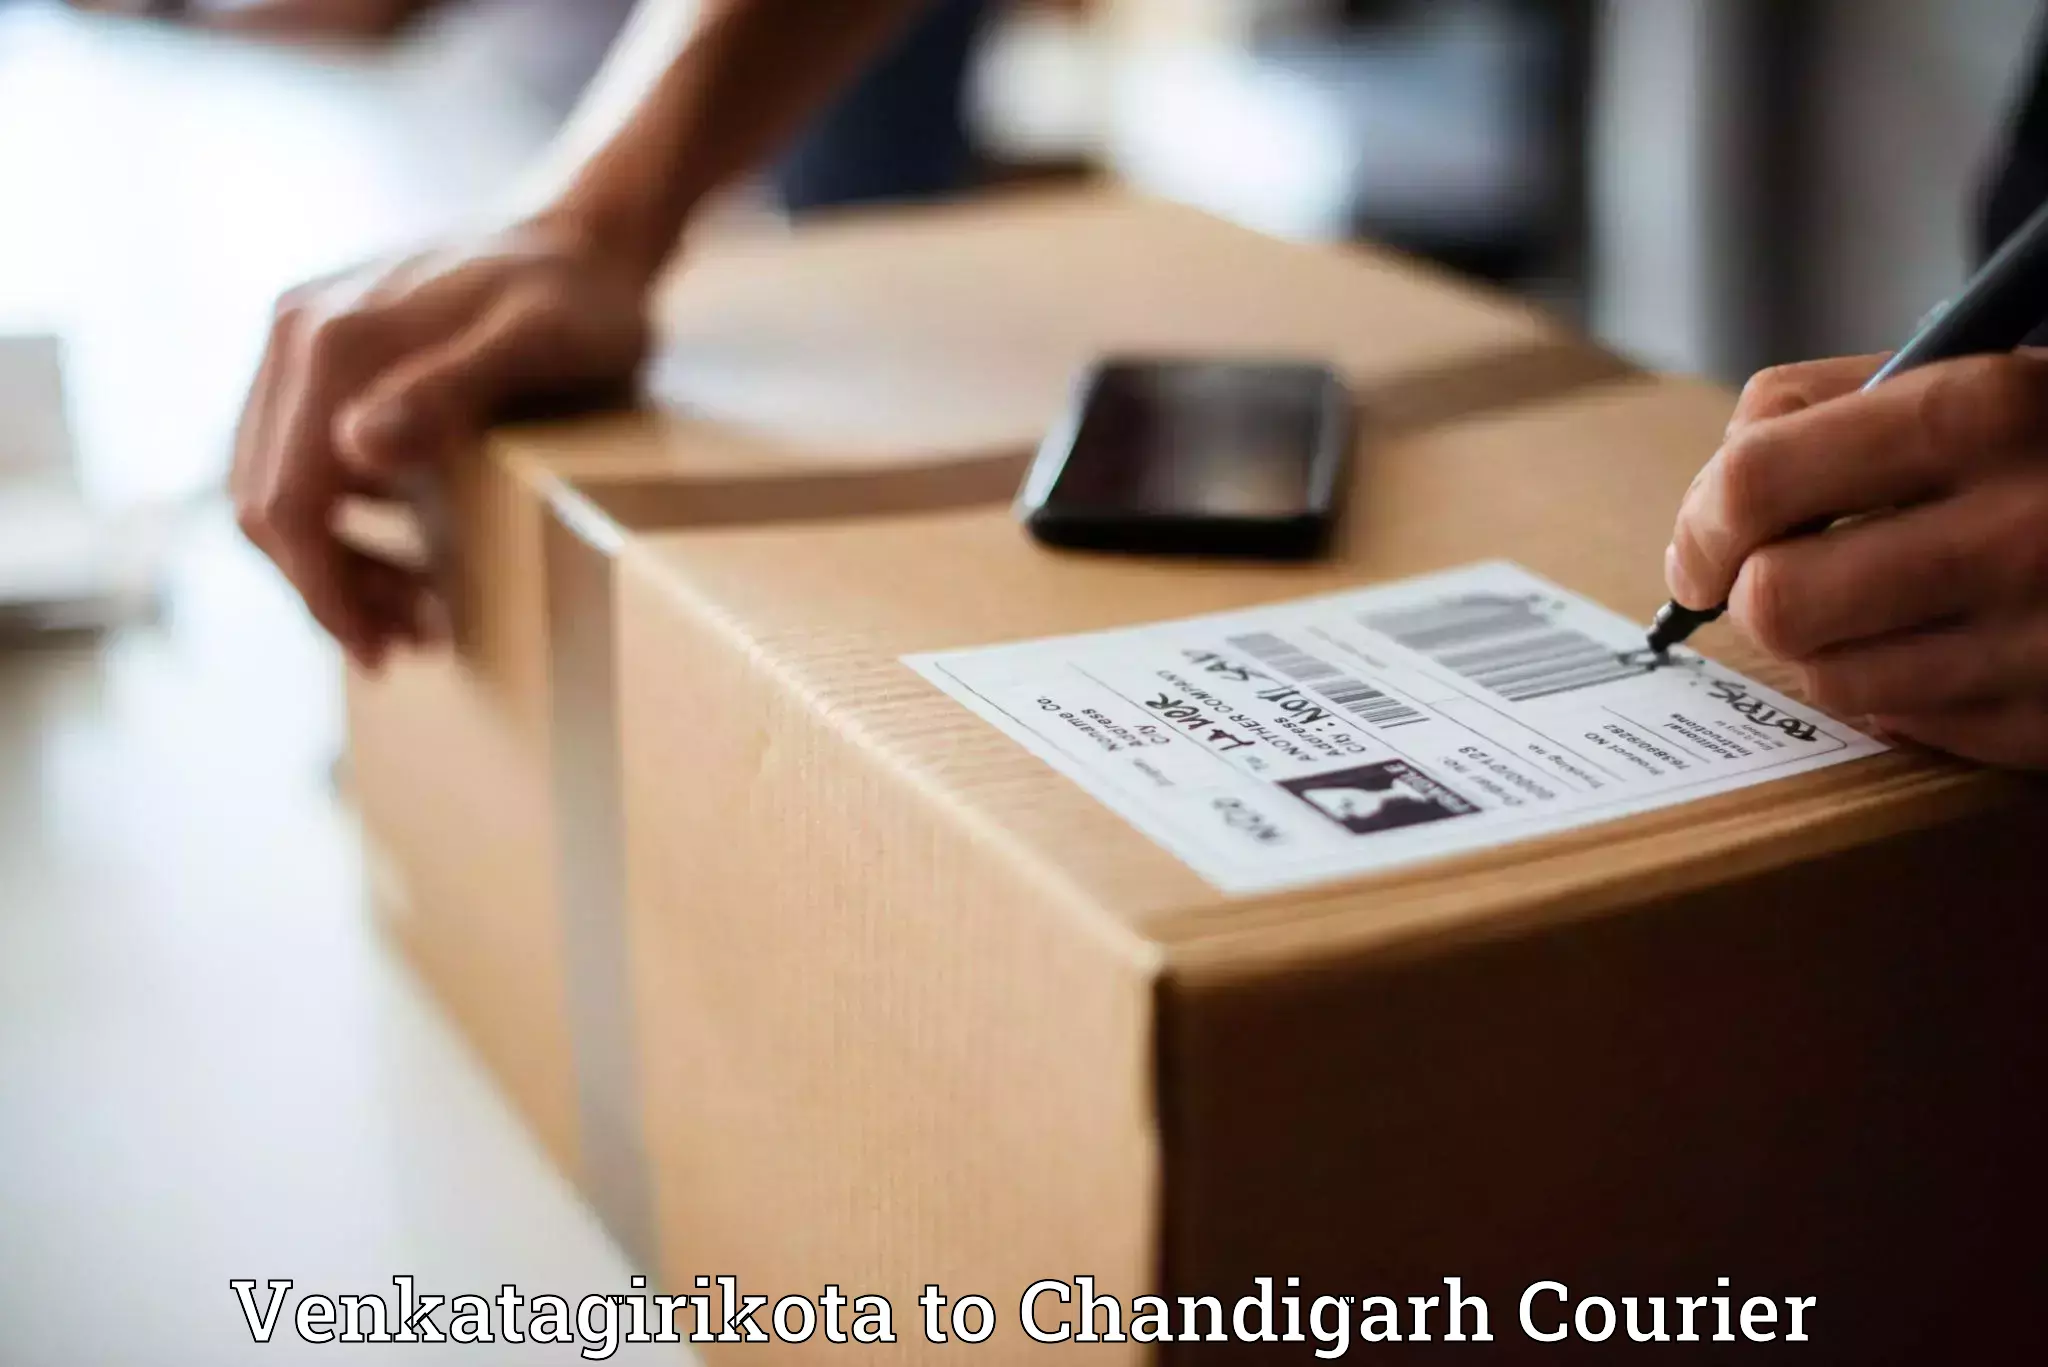 Expedited shipping methods Venkatagirikota to Chandigarh